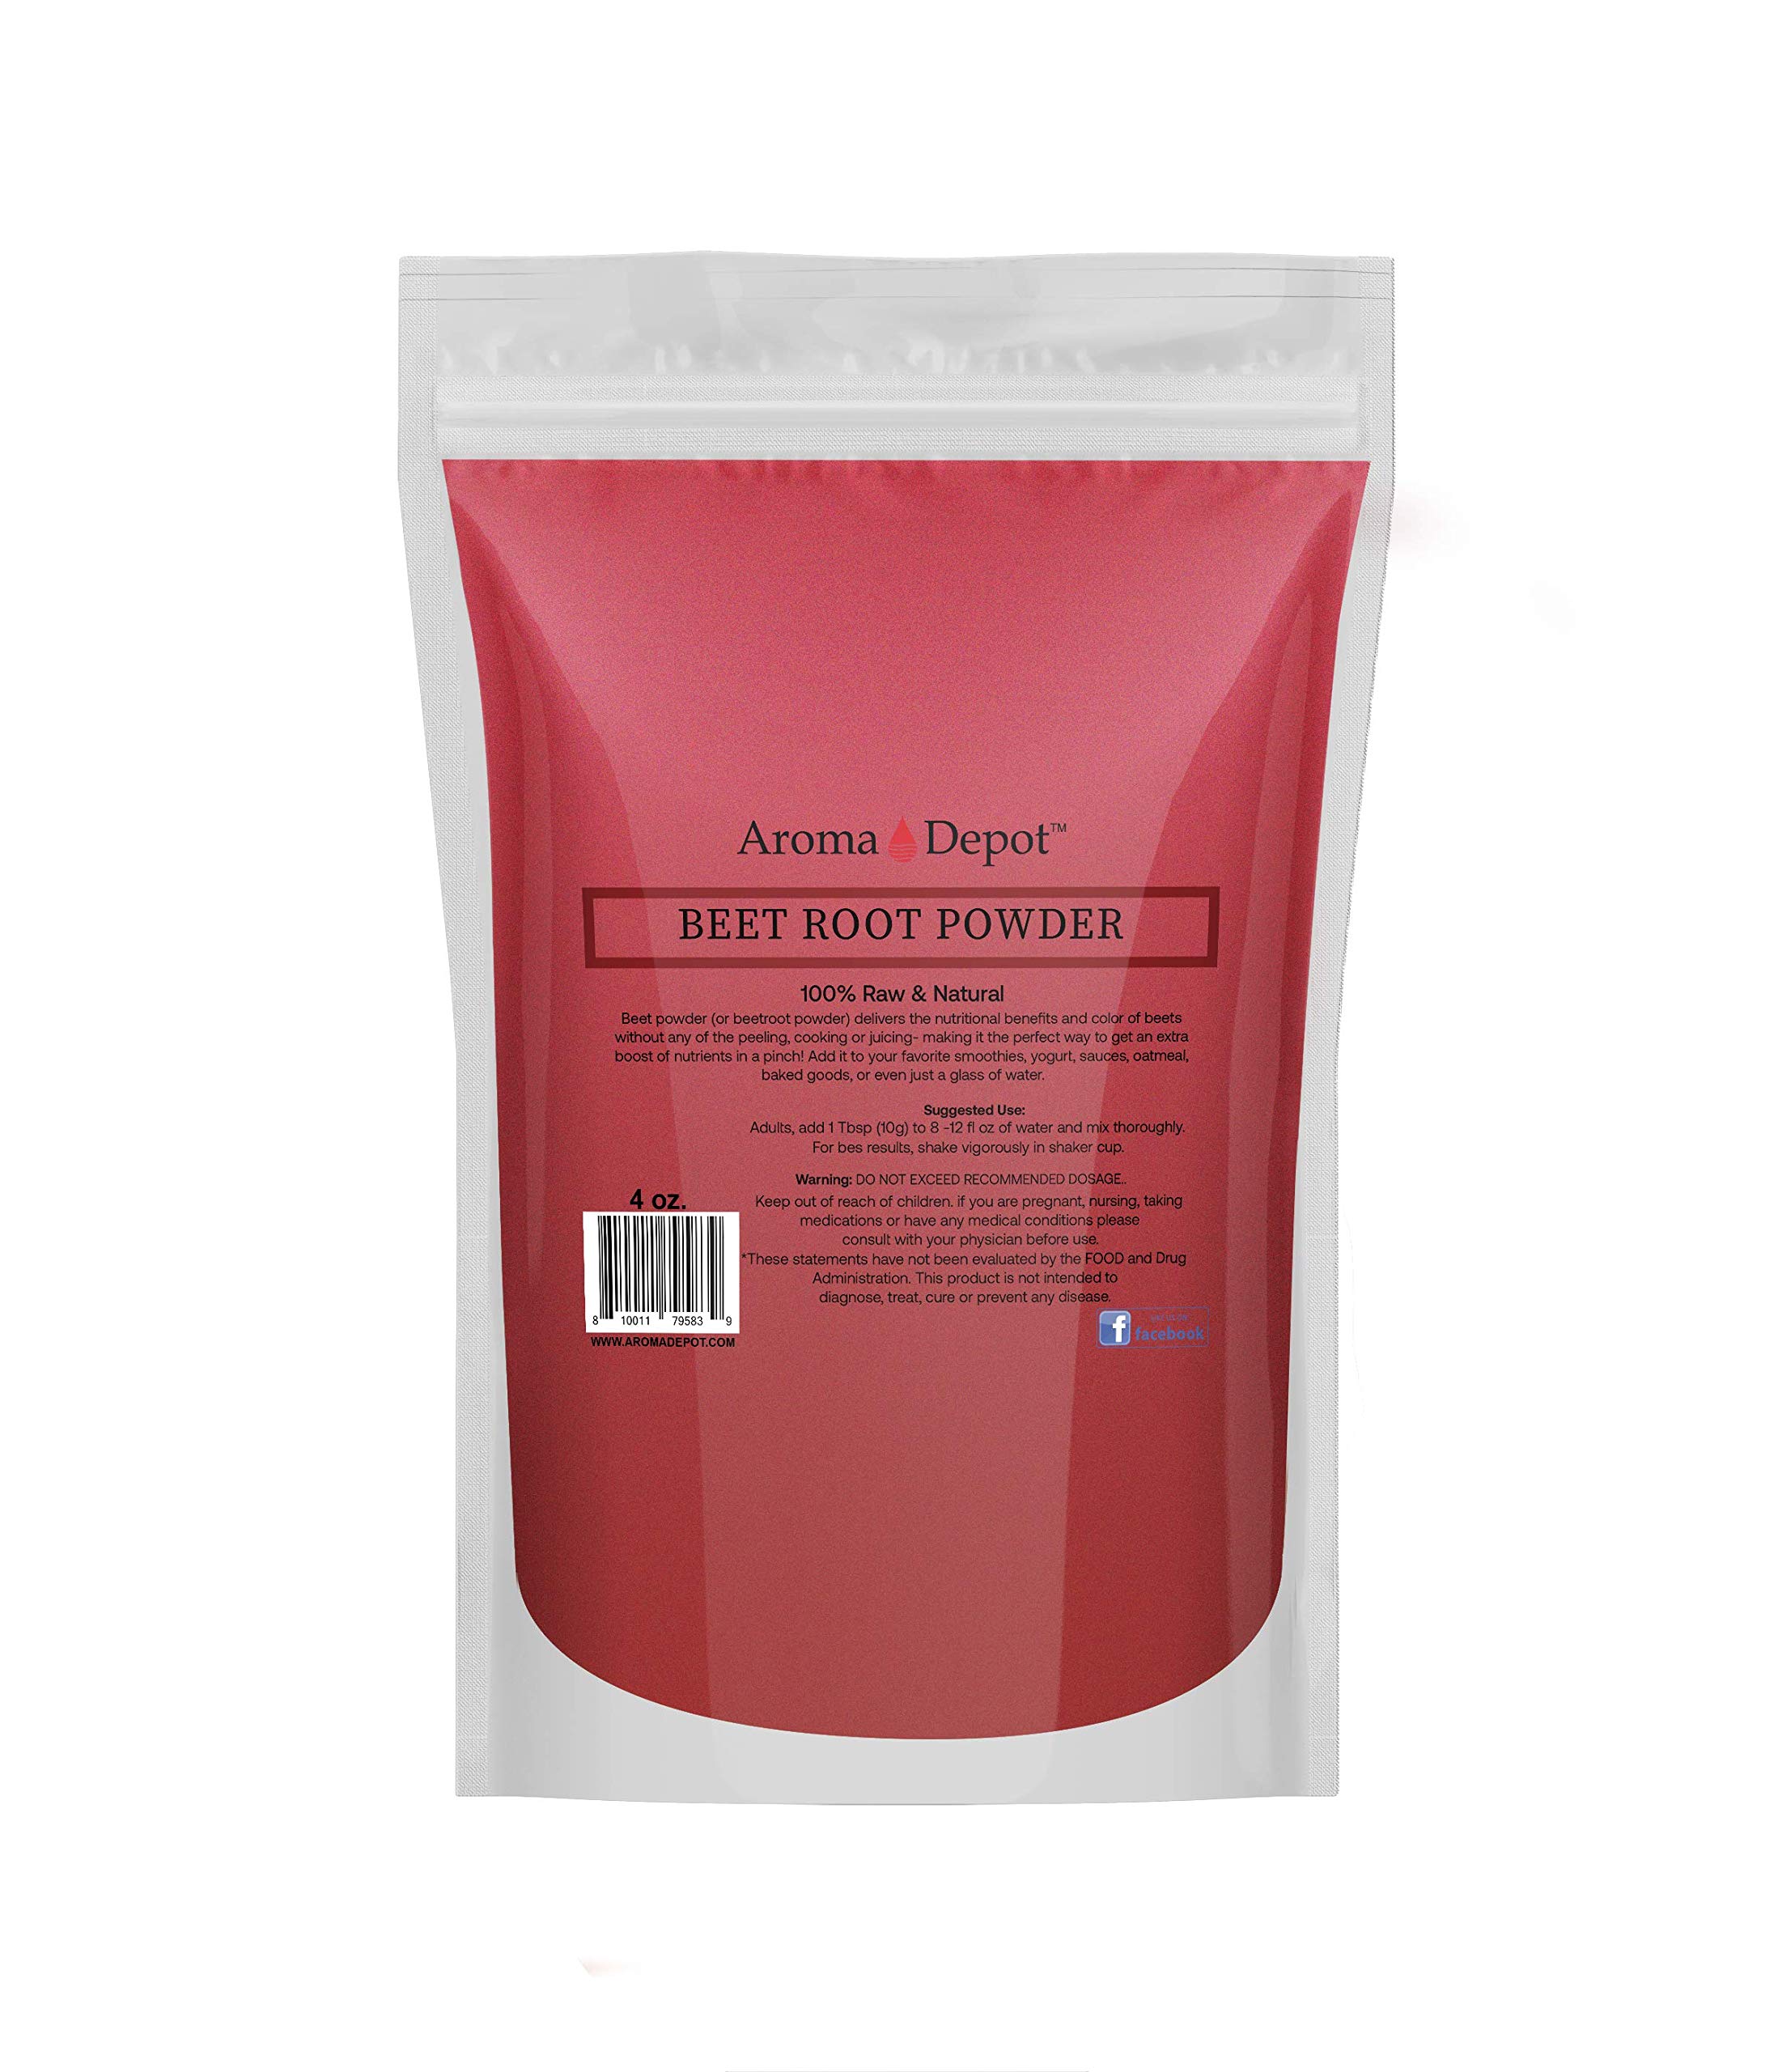 Aroma Depot Beet Root Powder 4oz Raw & Non-GMO I Vegan & Gluten